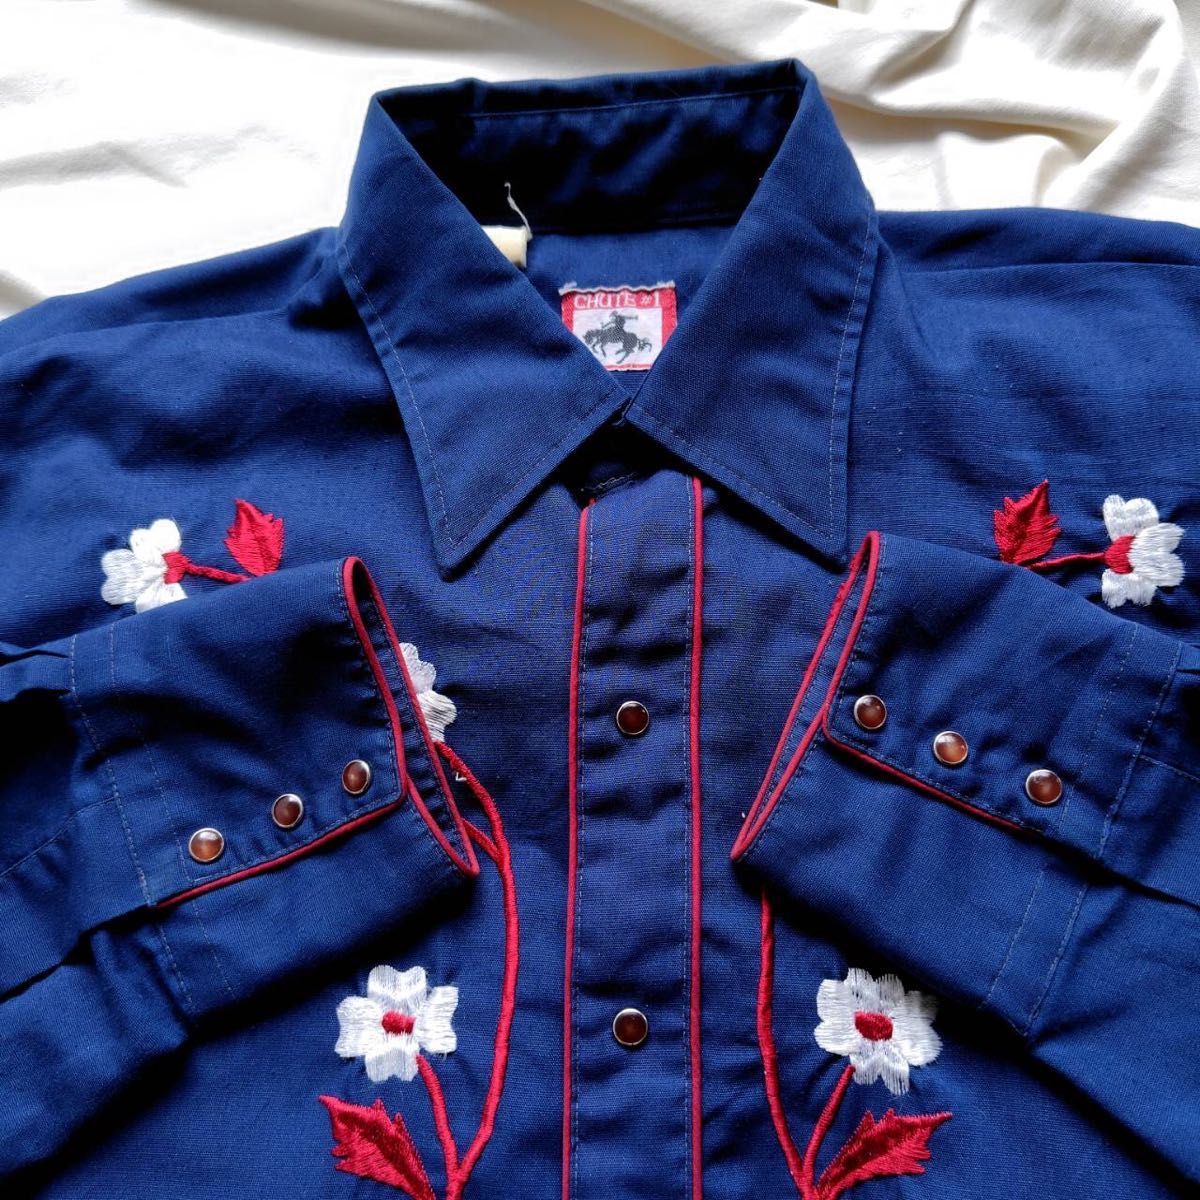 70s 80s メンズXL位 CHUTE#1 ヴィンテージウエスタンシャツ ブルー 青 レトロ 花 刺繍 フラップボタン 